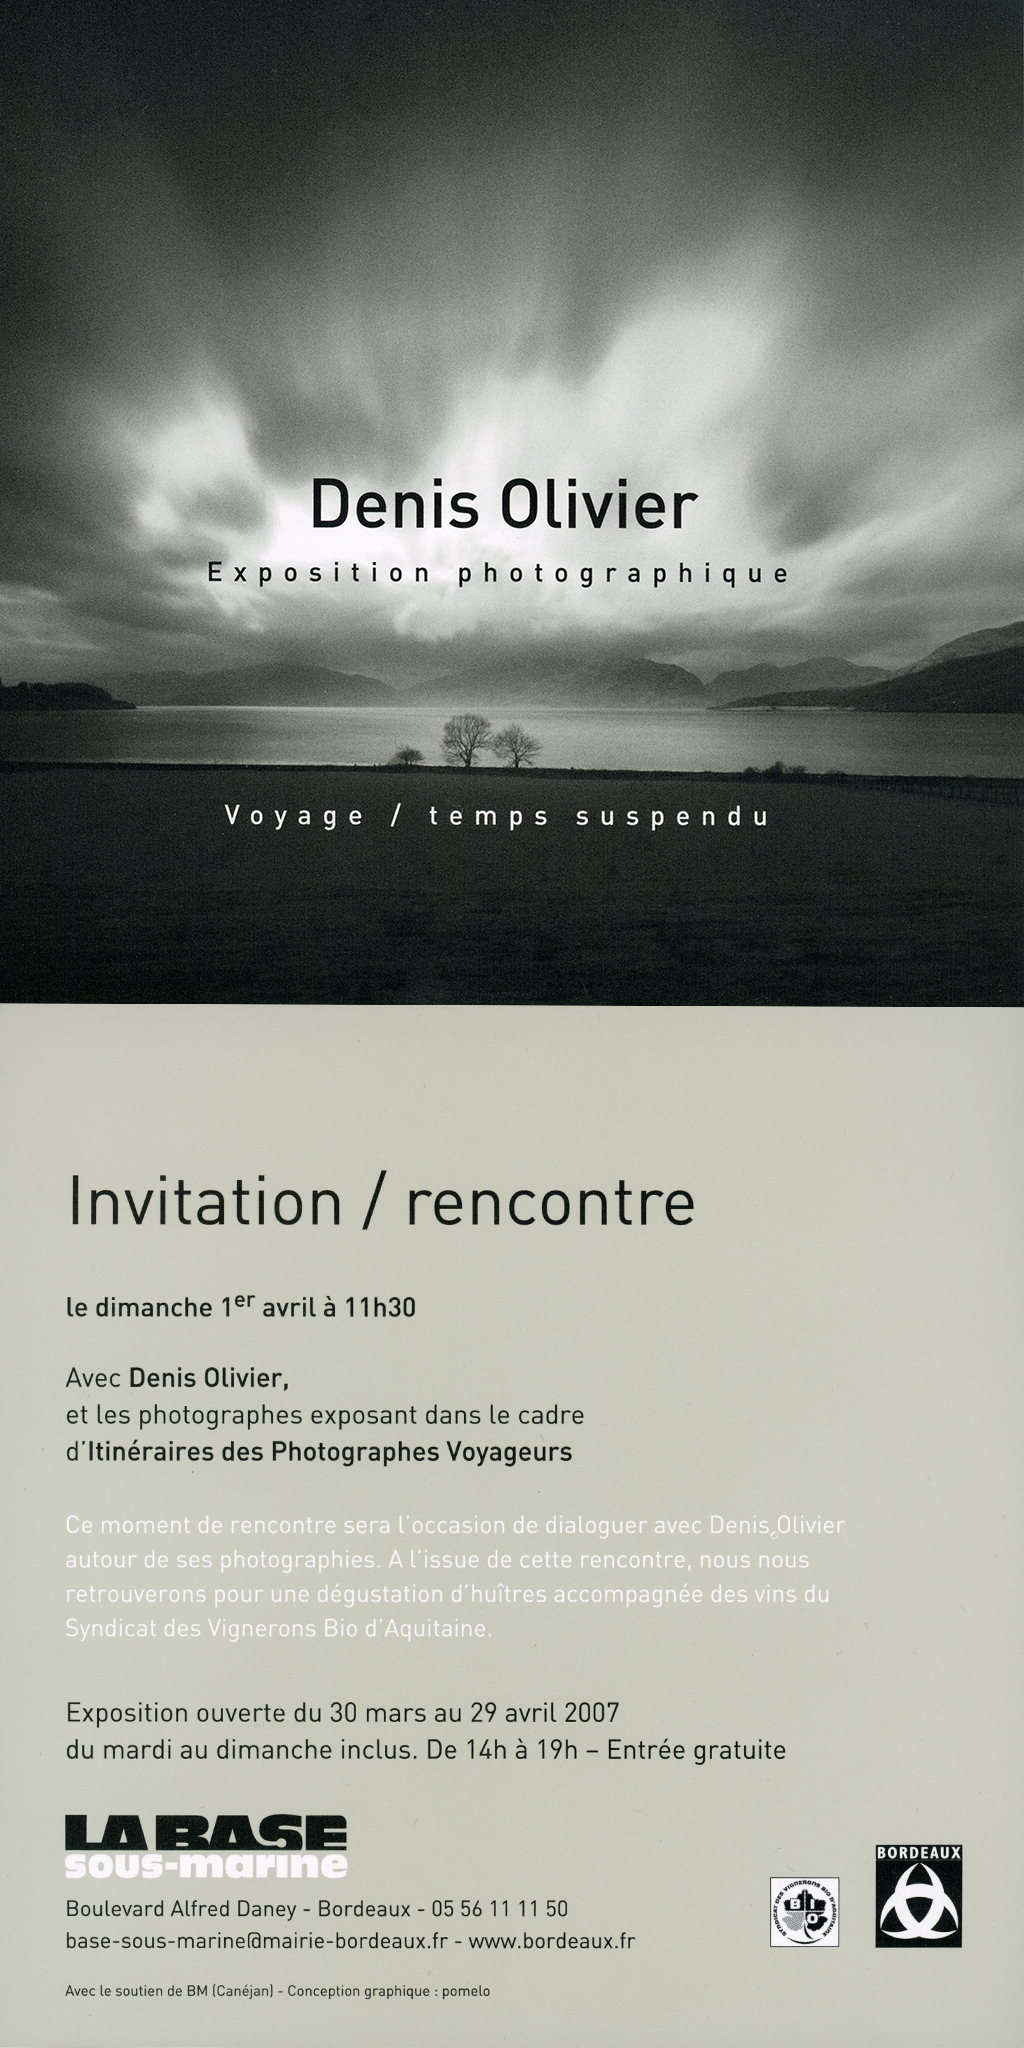 Collective Exhibition
Itinéraires des Photographes Voyageurs 2007
April 2007